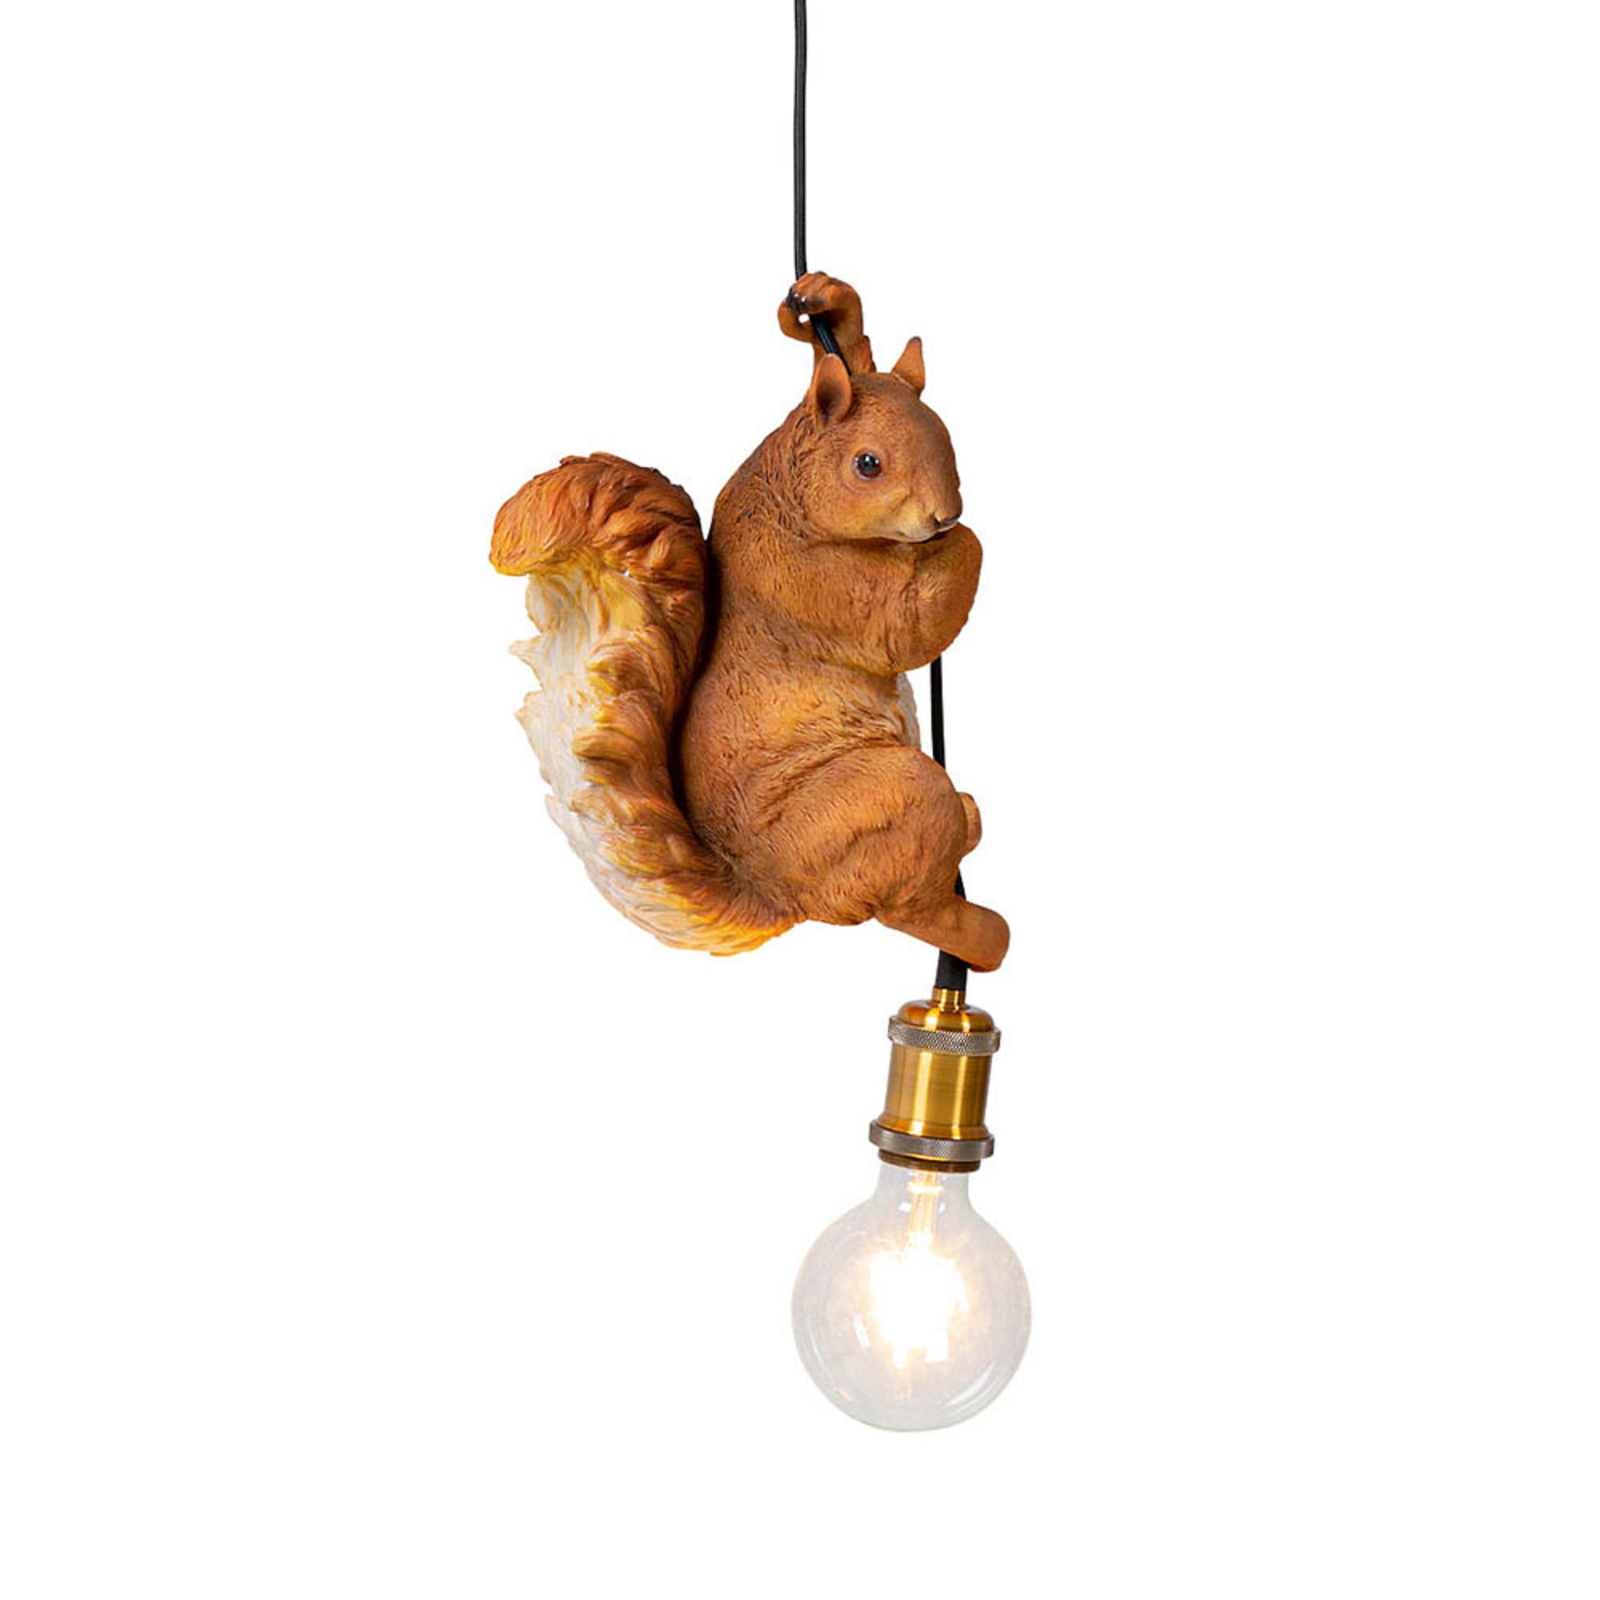 KARE Squirrel lampa wisząca z modelem wiewiórki